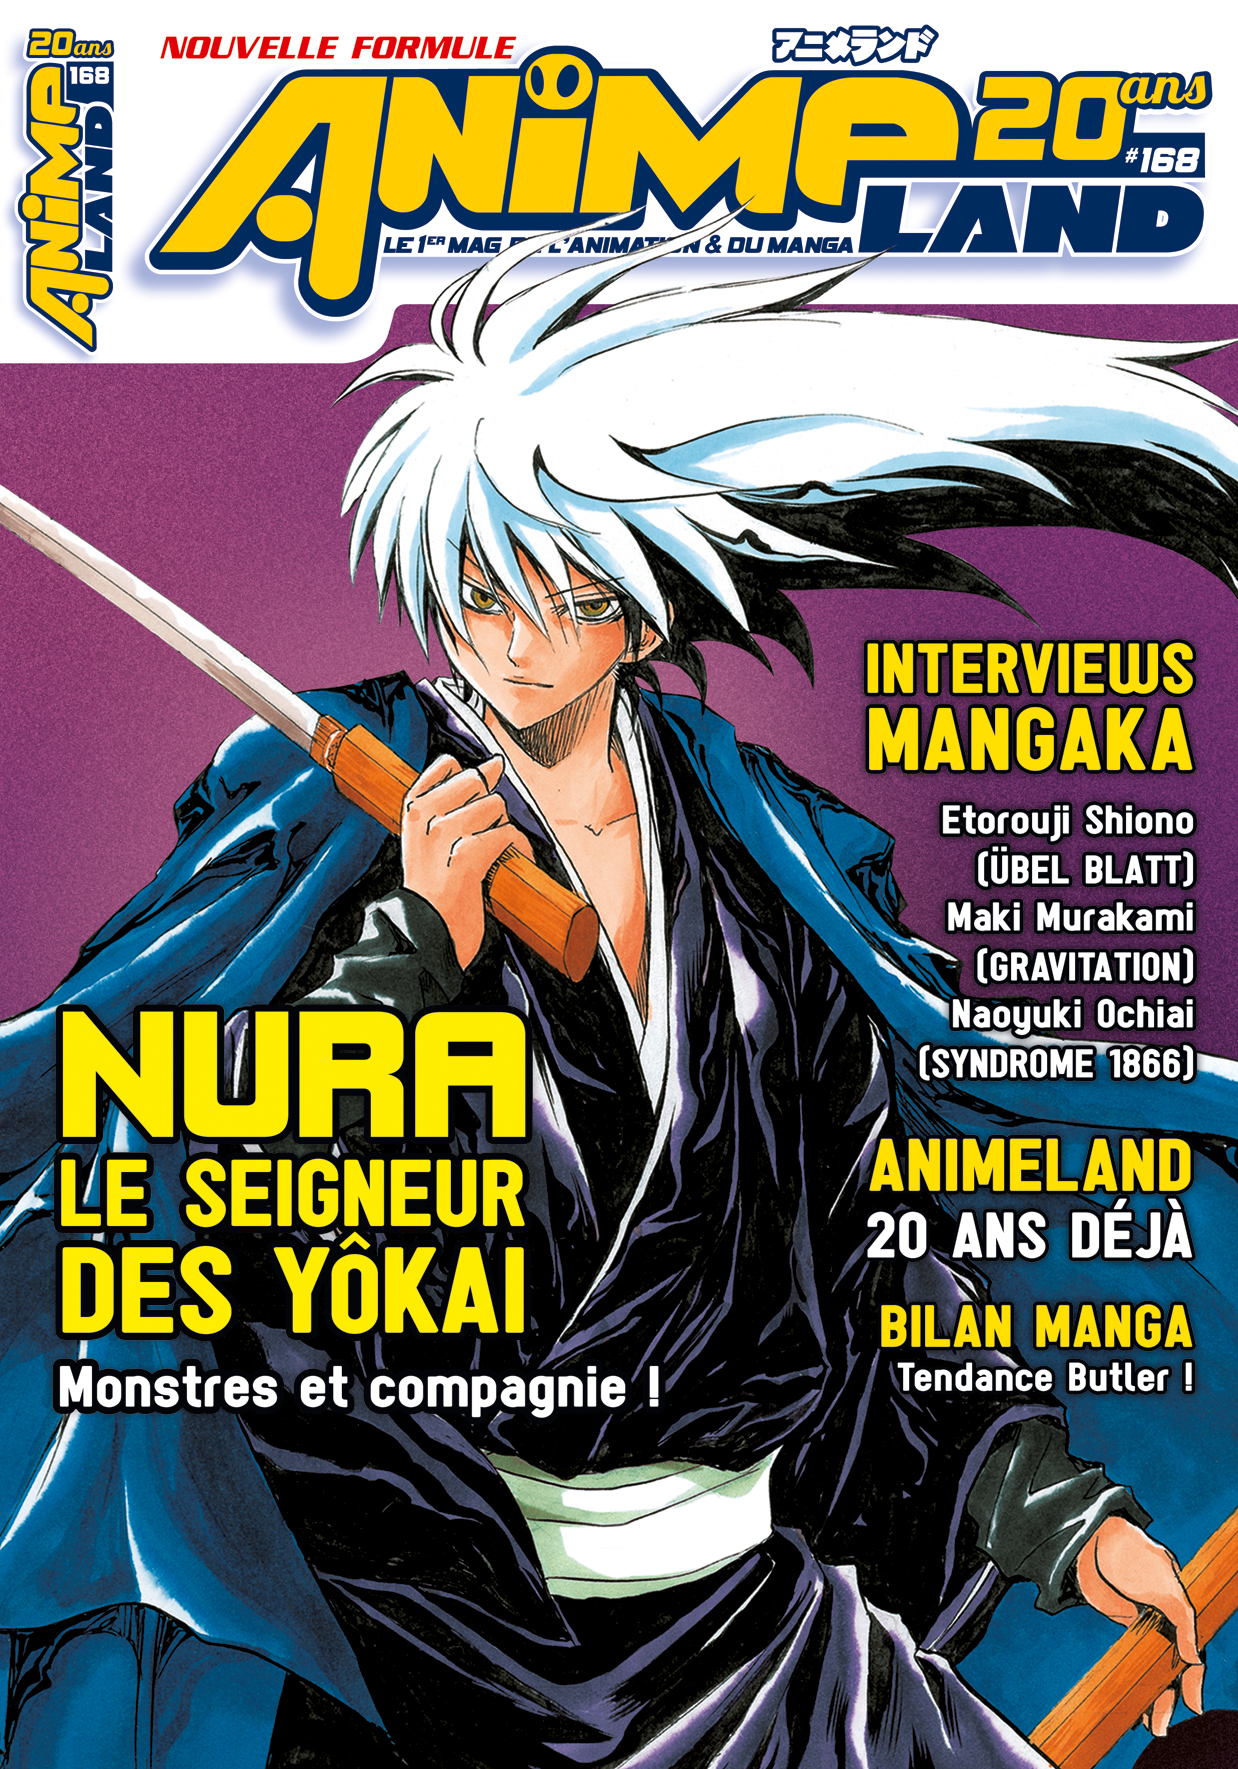 Des coffrets manga collector annoncés chez Panini - Actualités - Anime News  Network:FR